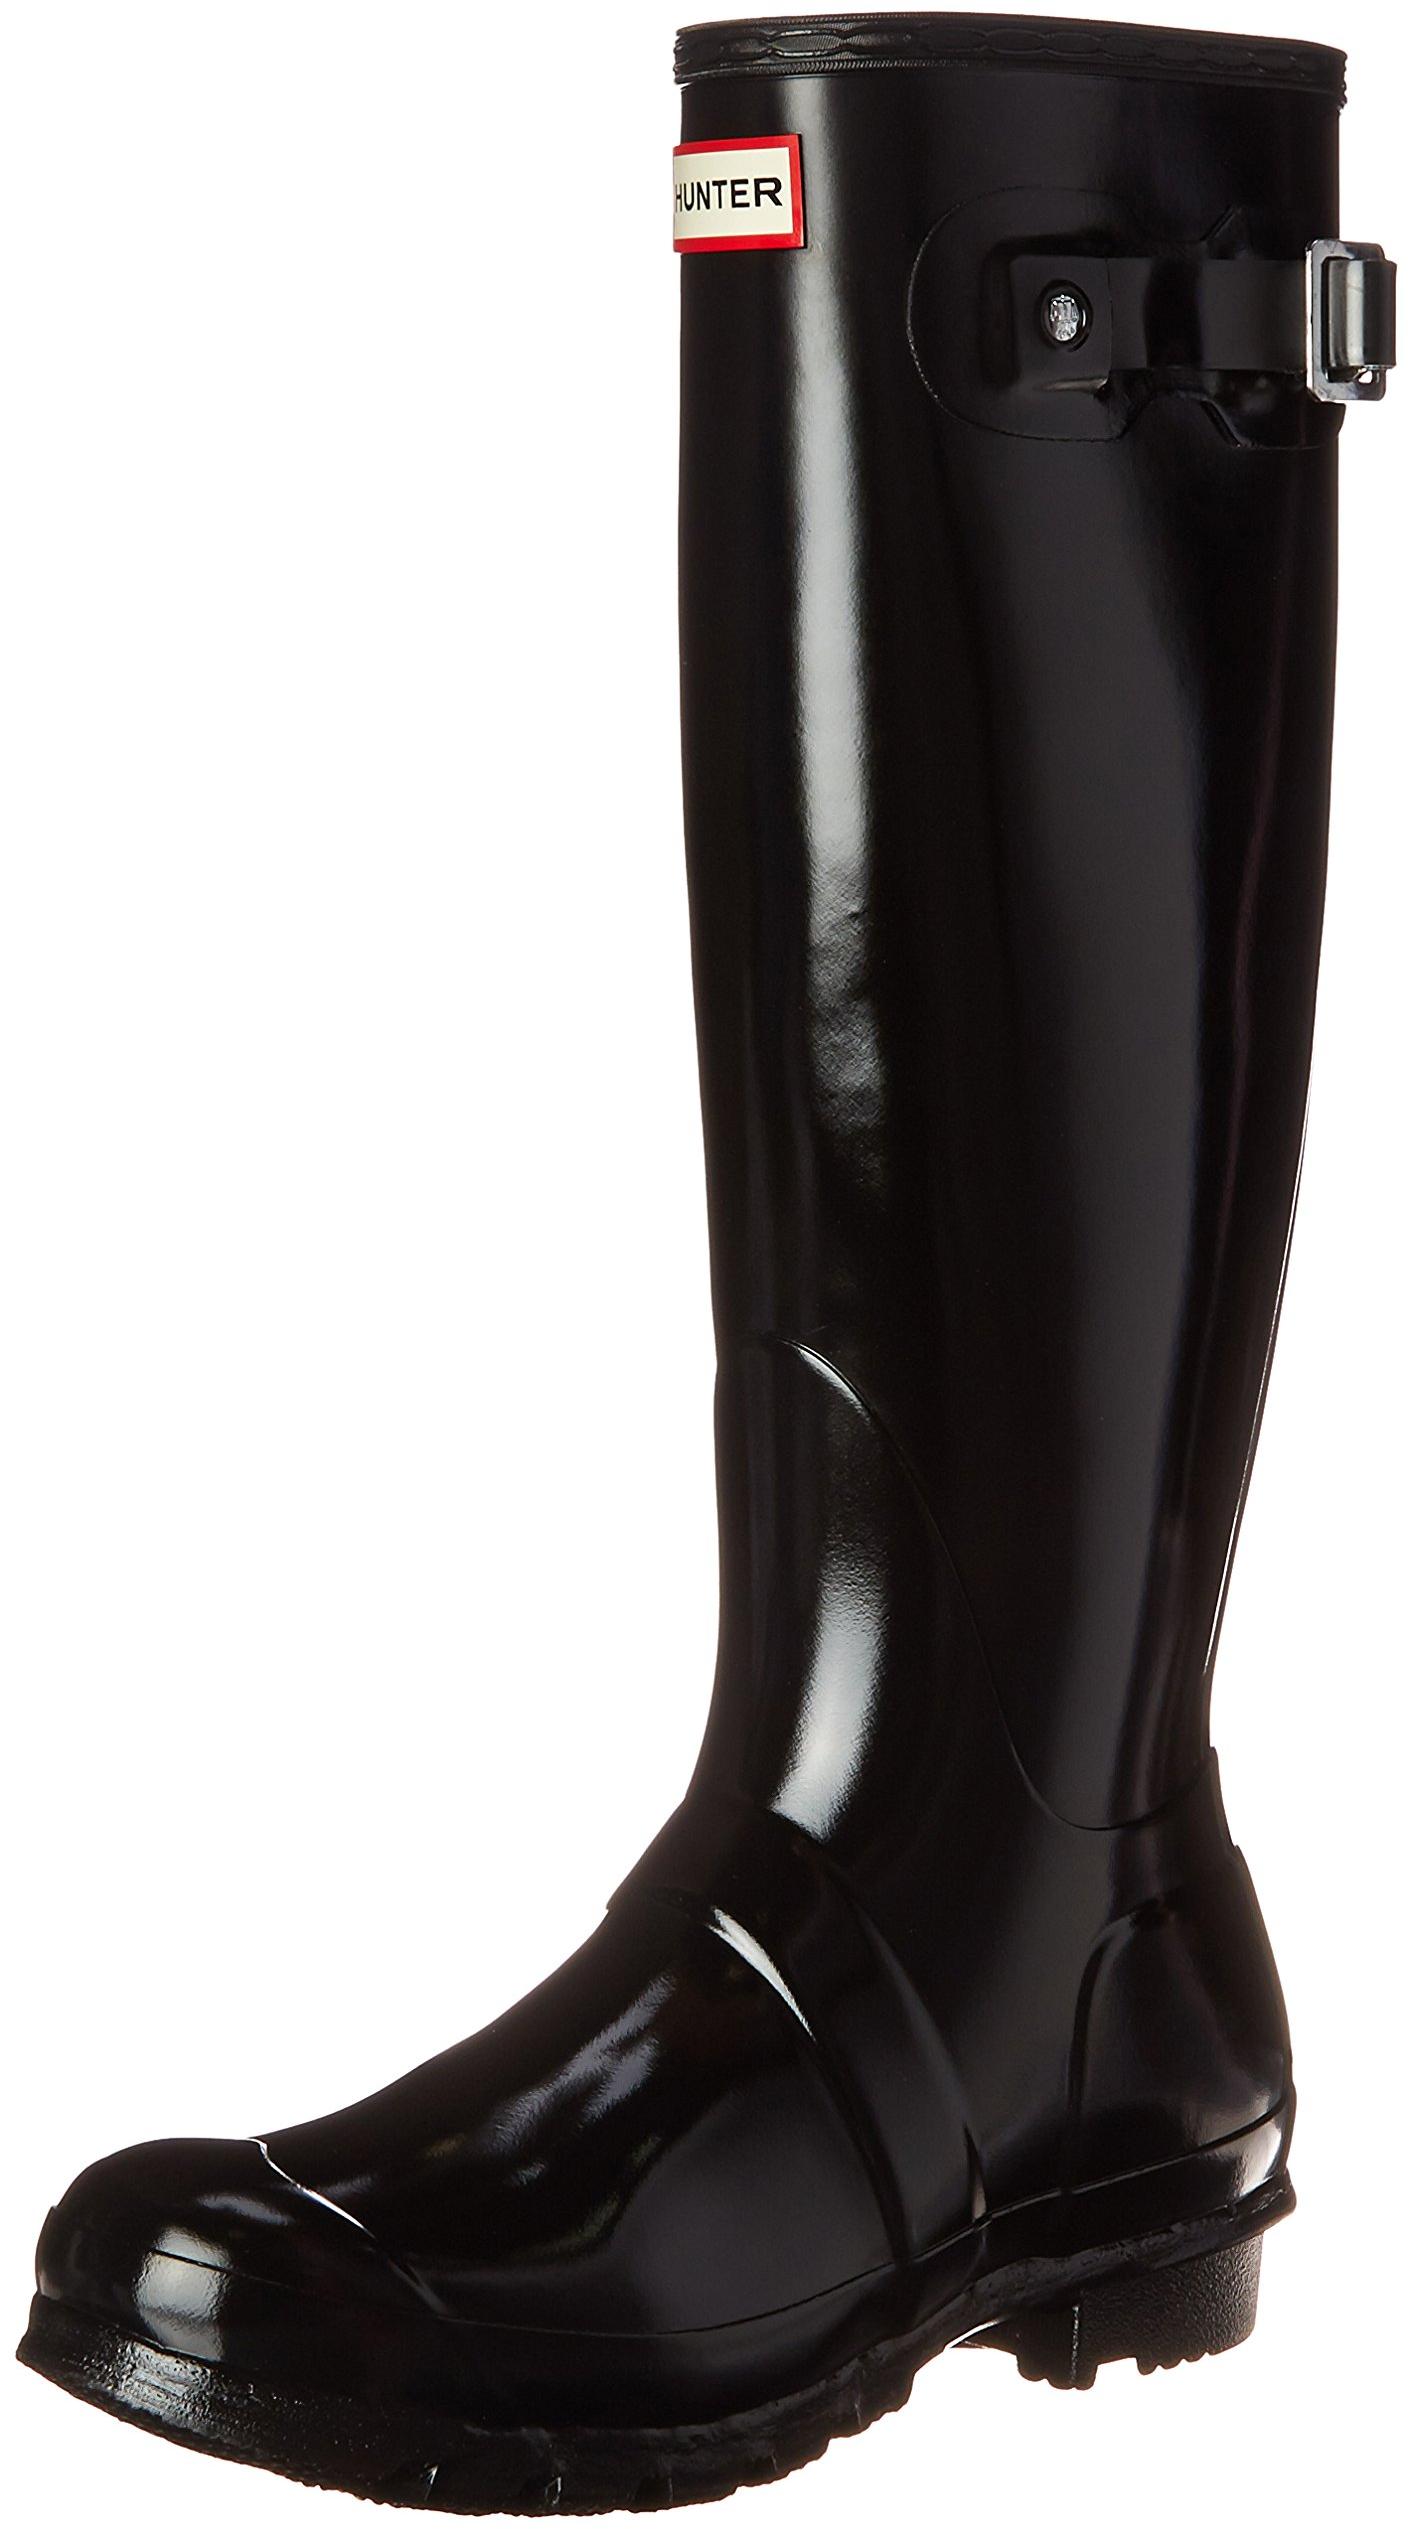 Hunter Original Tall Gloss Ladies Black Rain Boots 7 844318060024 | eBay